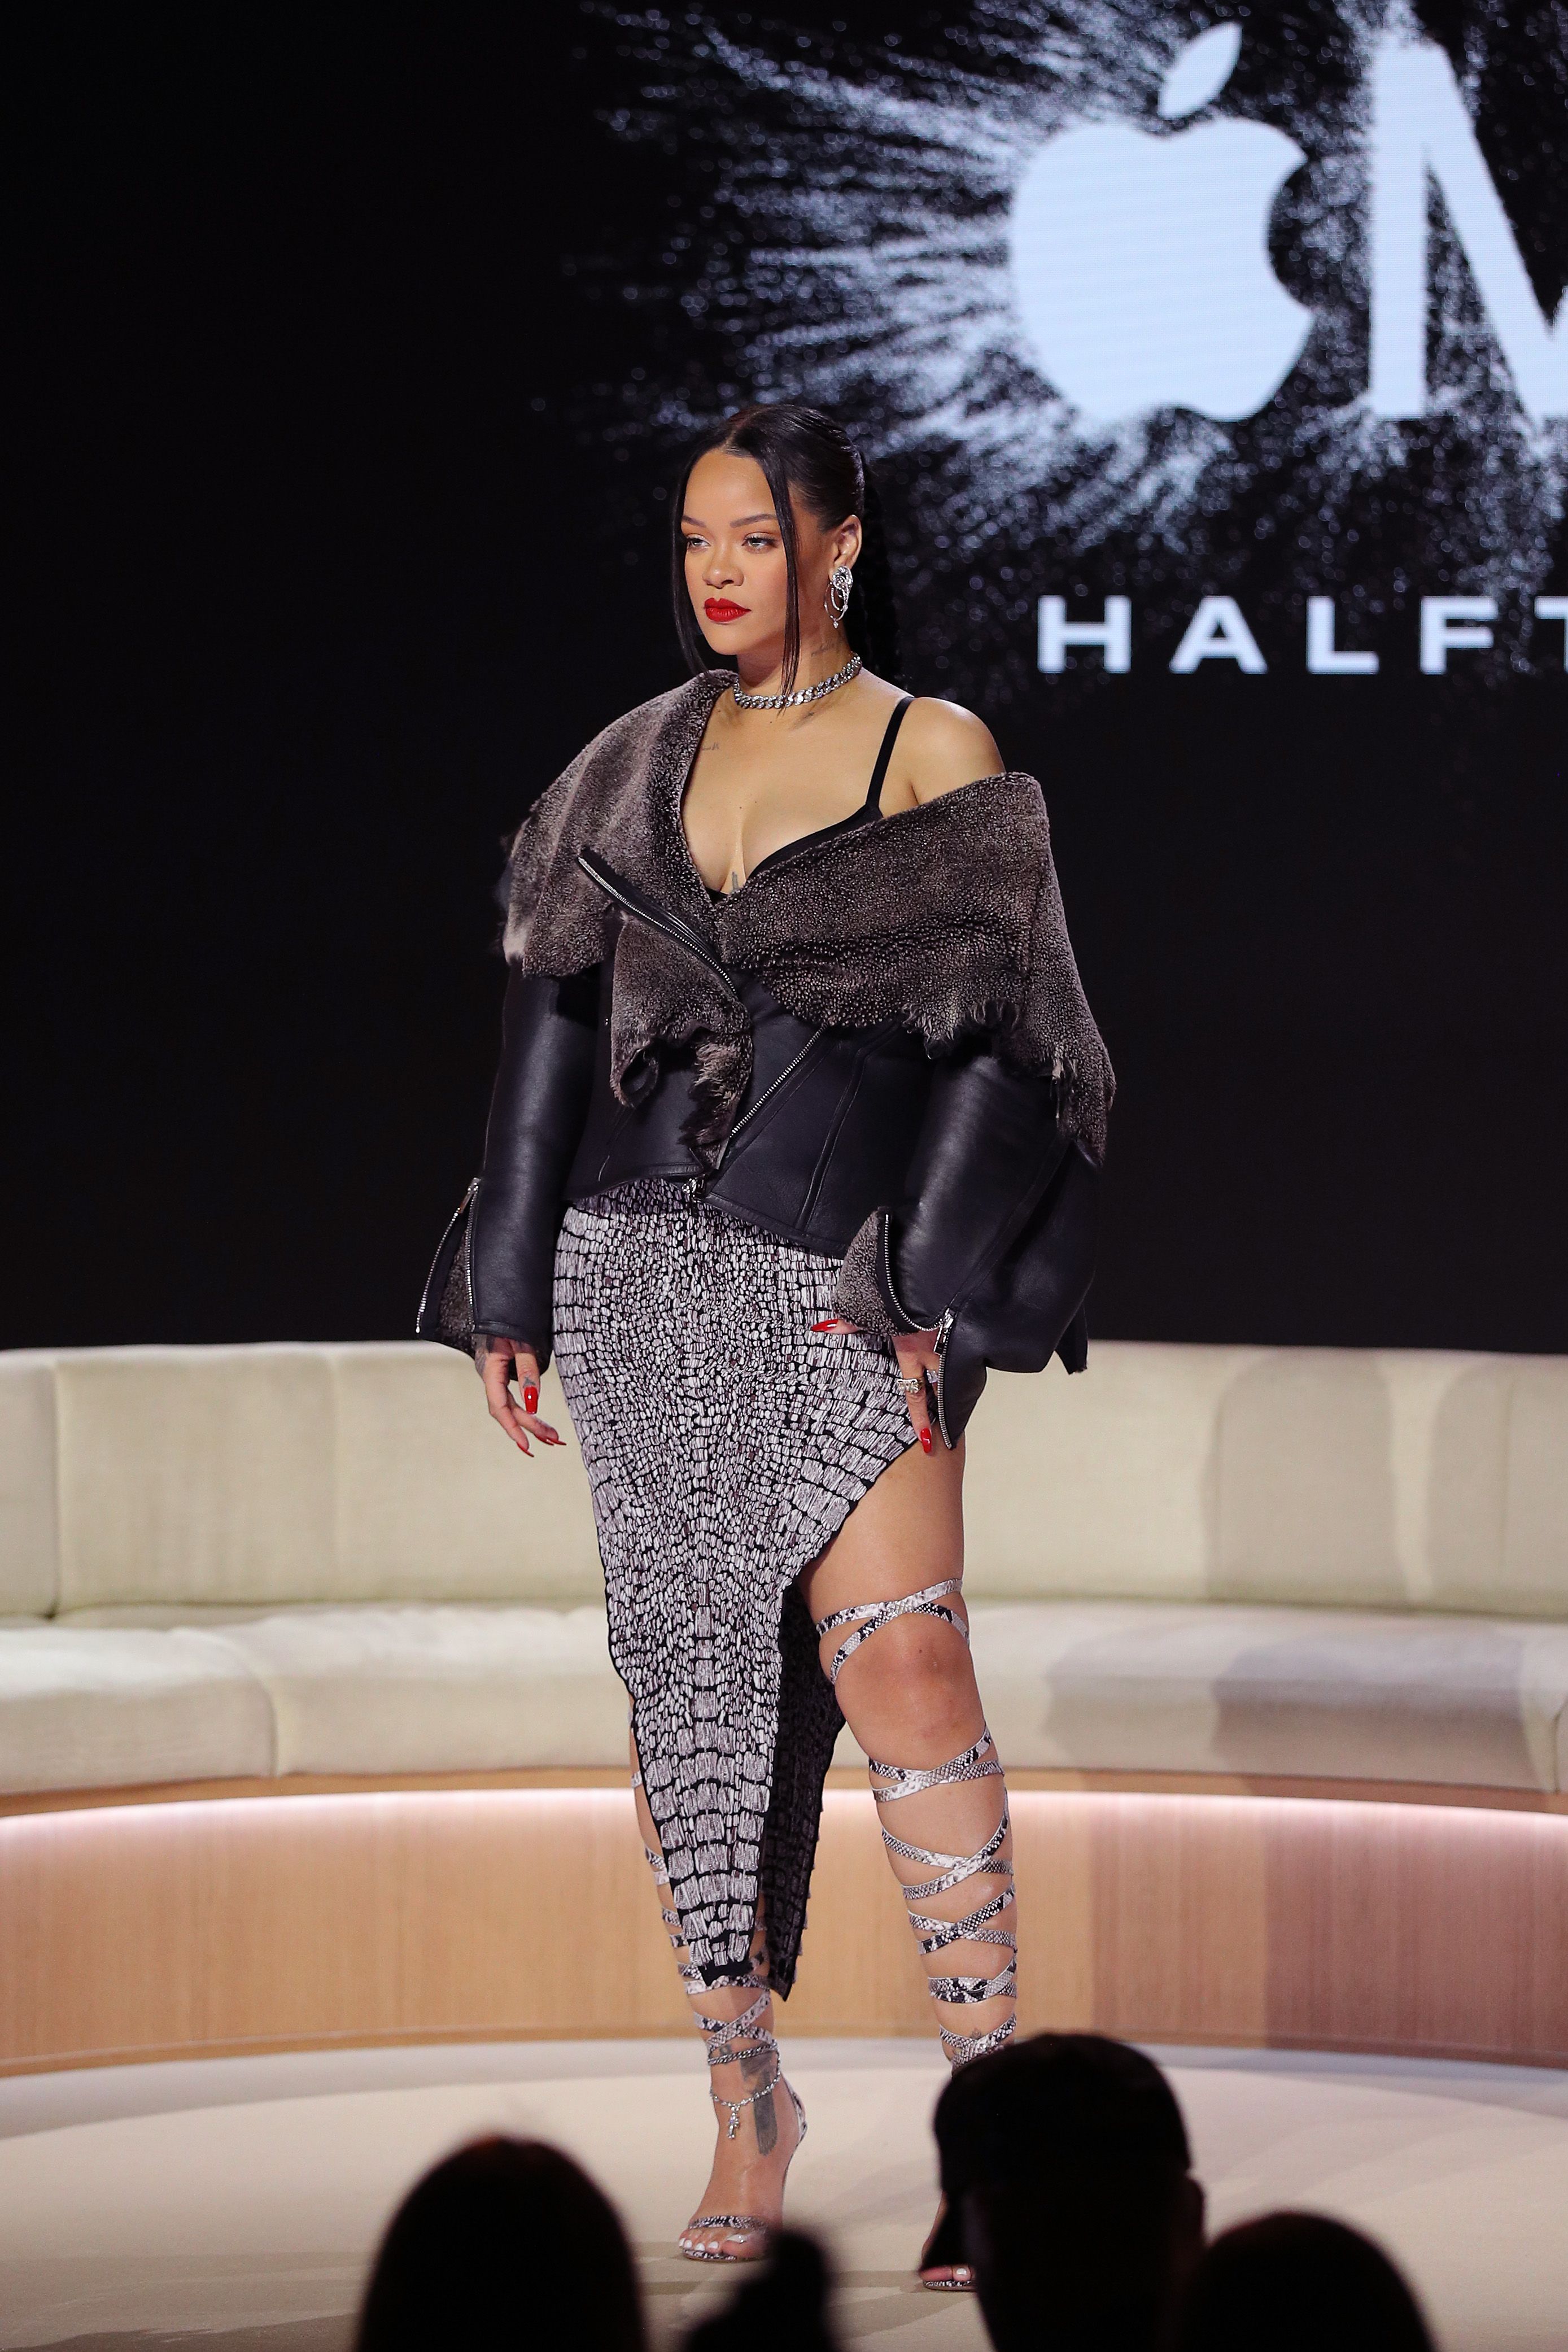 Rihanna made histoRIH tonight wearing custom SS '22 inspired